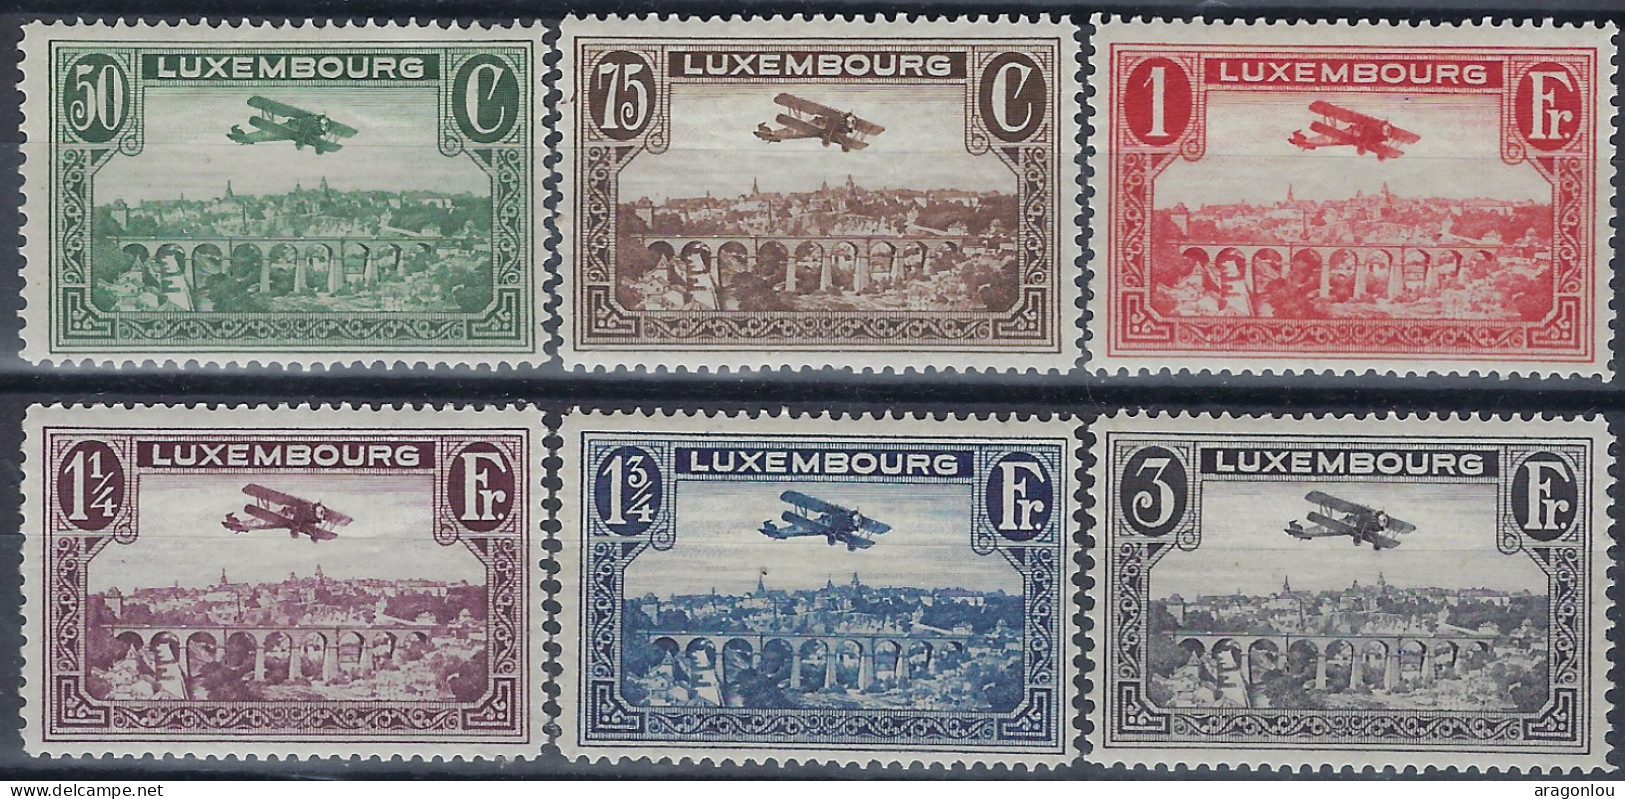 Luxembourg - Luxemburg - Timbres  1931      2 Séries   Biplan  Breguet     MNH** - Ungebraucht